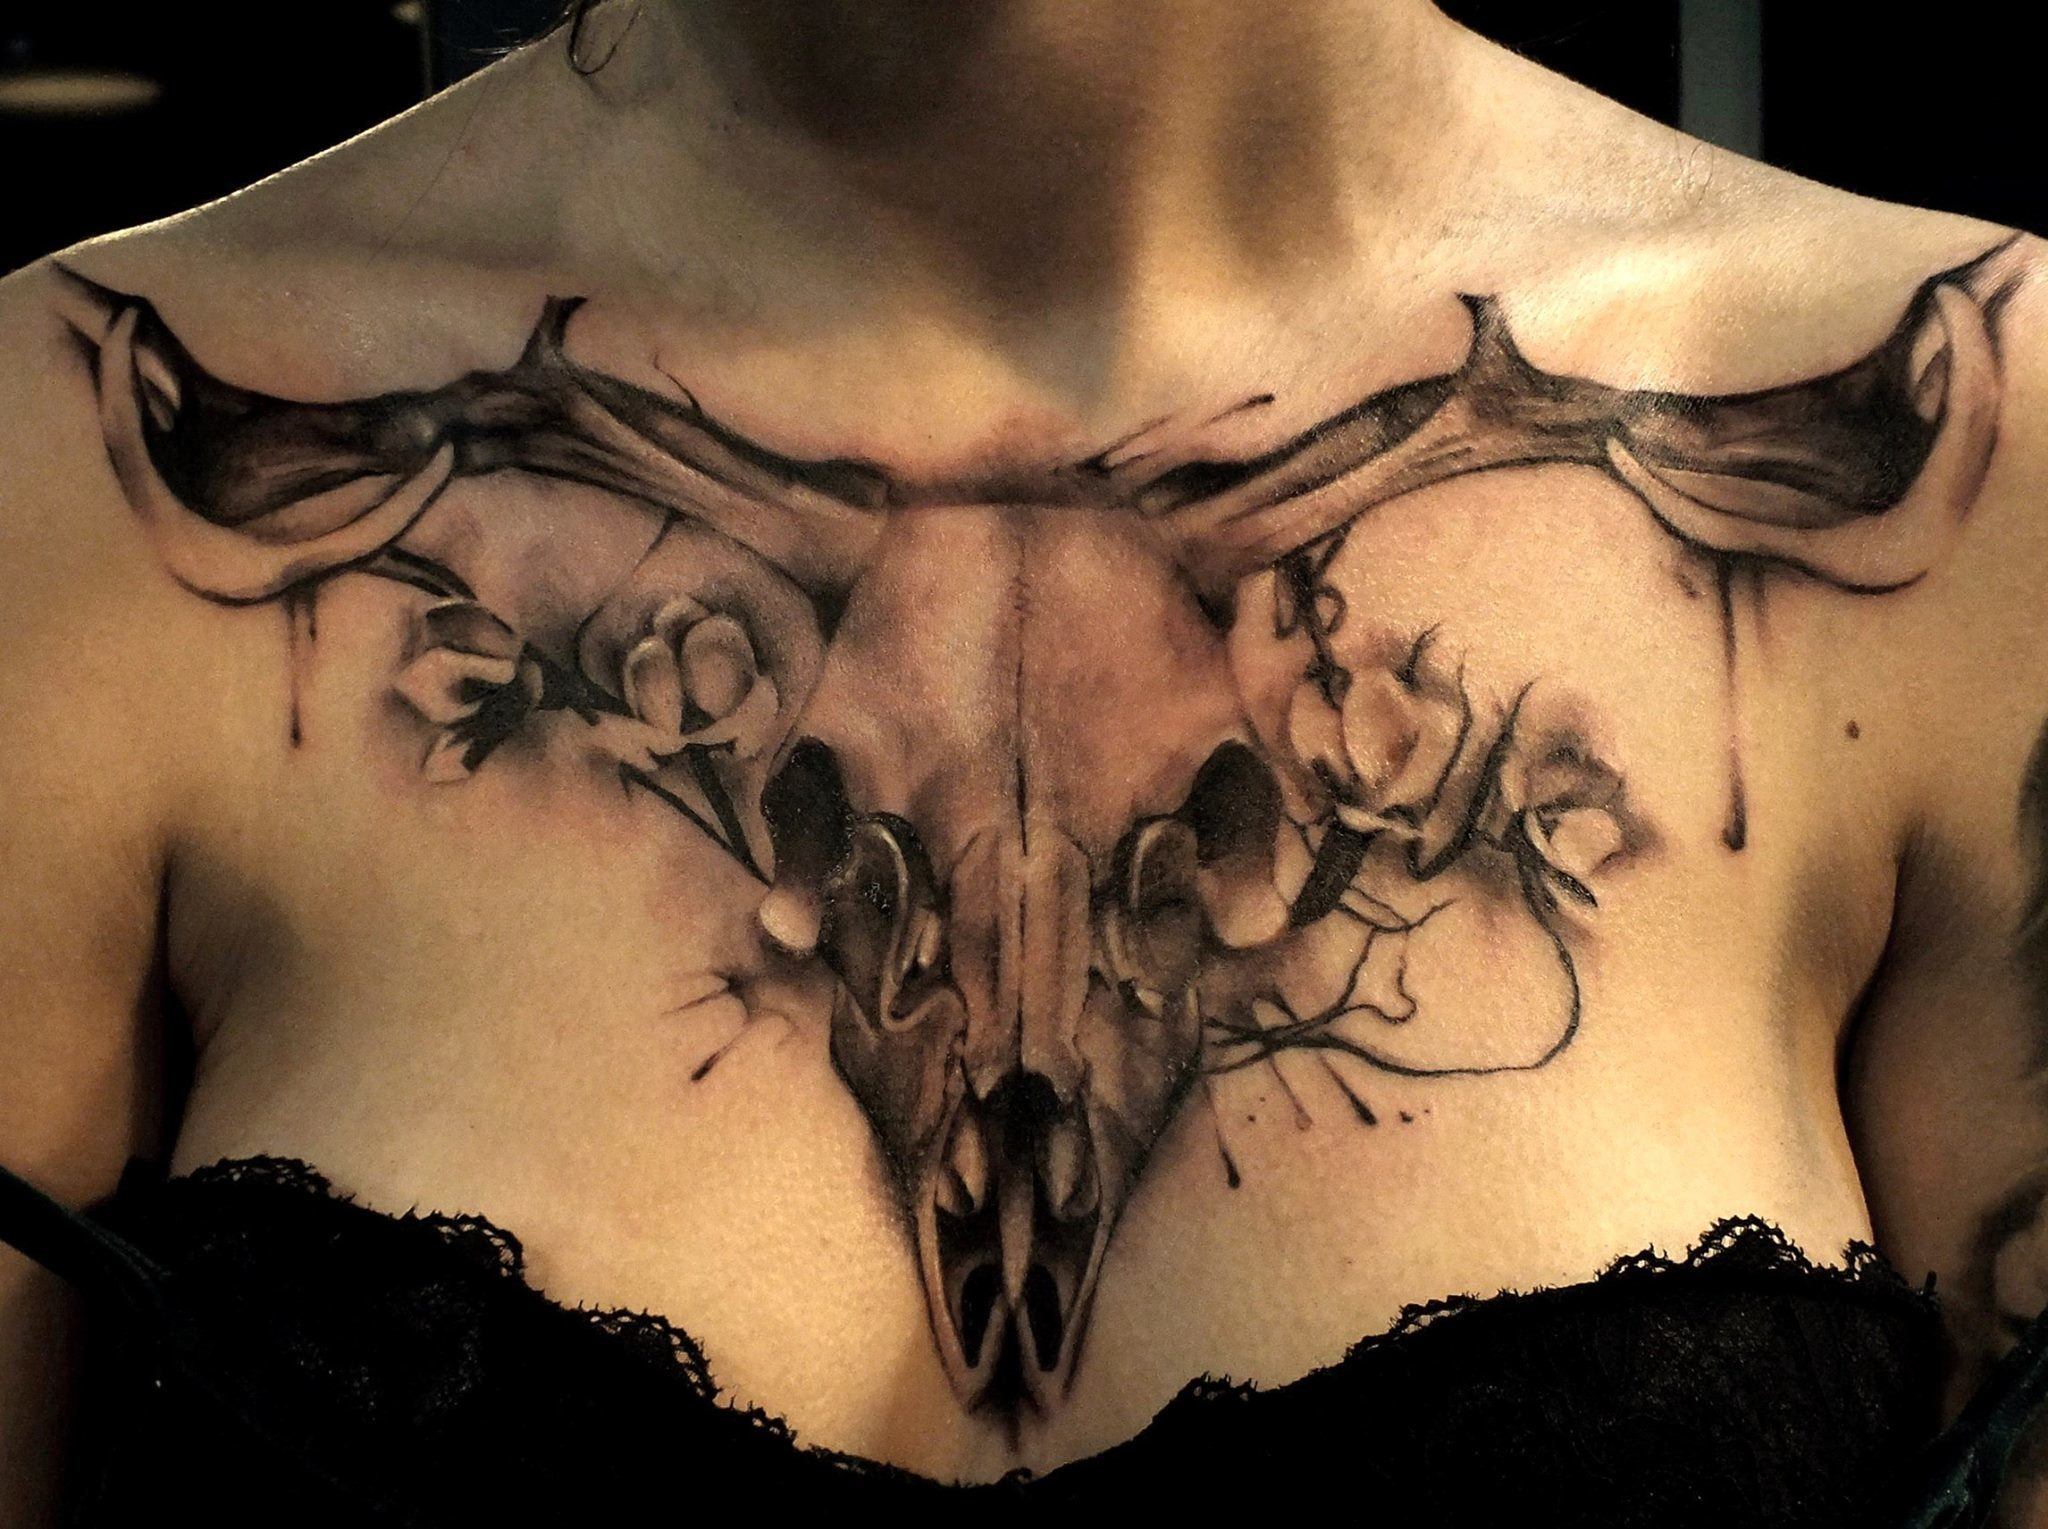 Longhorn Skull tattoo for women on chest.